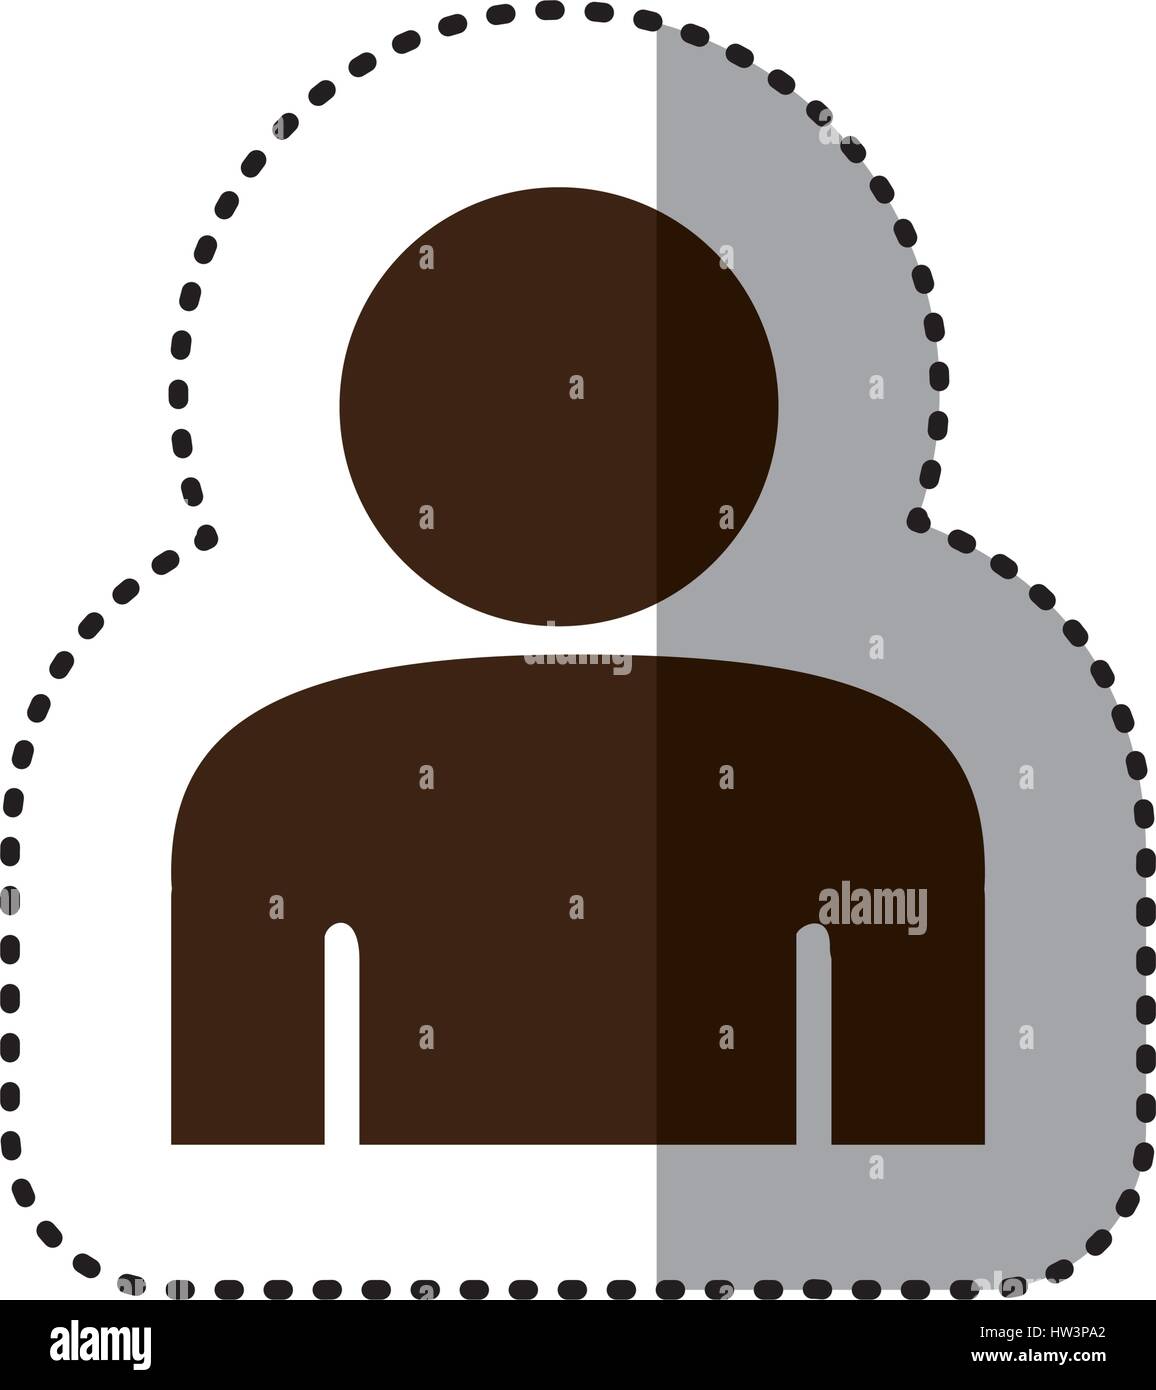 sticker brown silhouette half body figure person icon Stock Vector